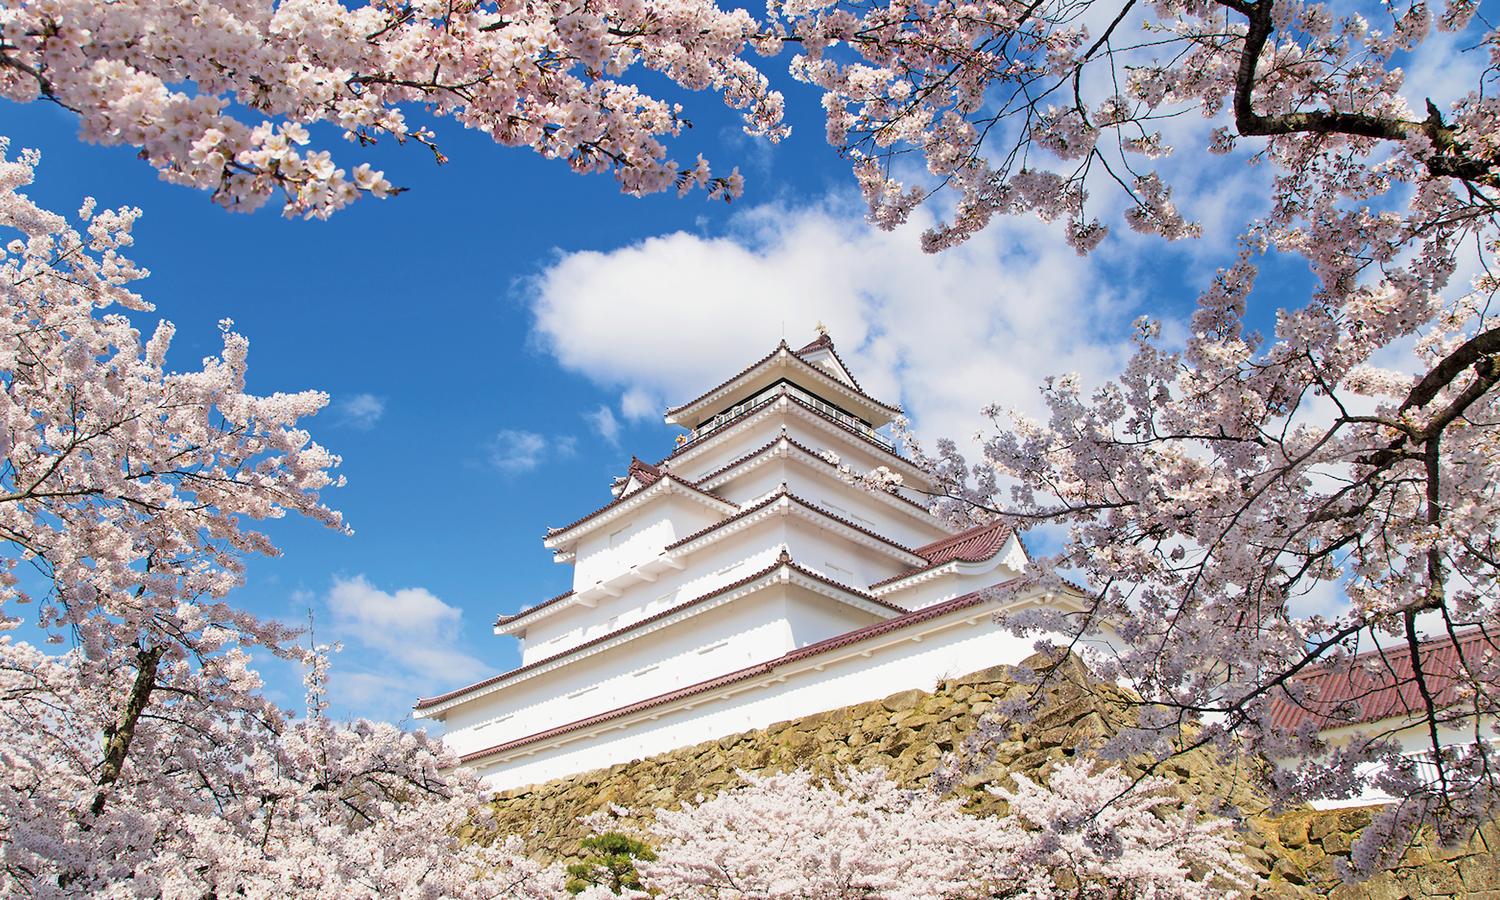 「日本さくら名所100選」にも選定された鶴ヶ城公園の桜